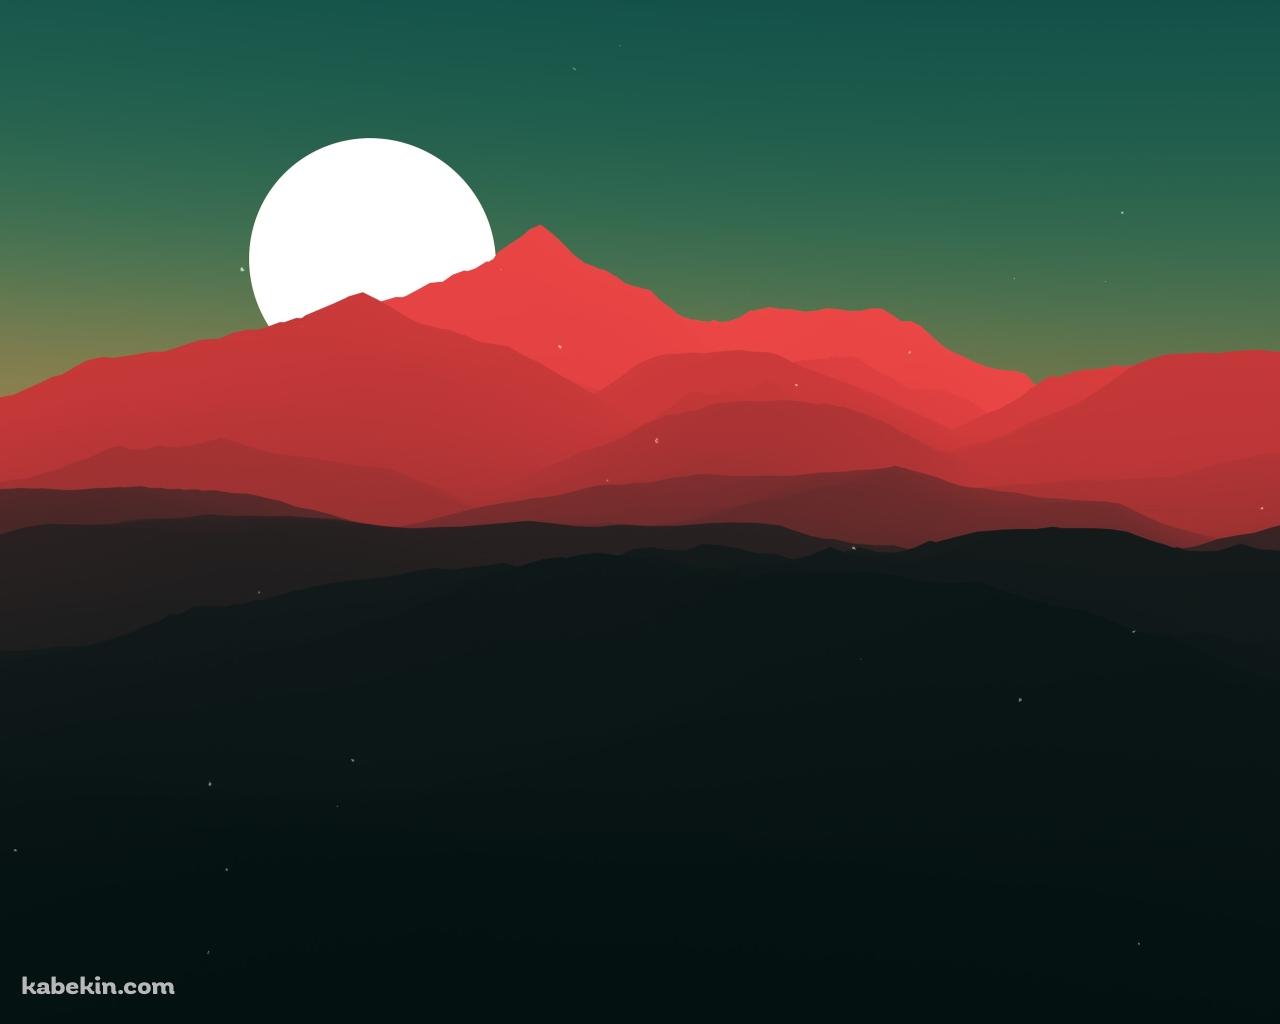 満月と赤い山の壁紙(1280px x 1024px) 高画質 PC・デスクトップ用